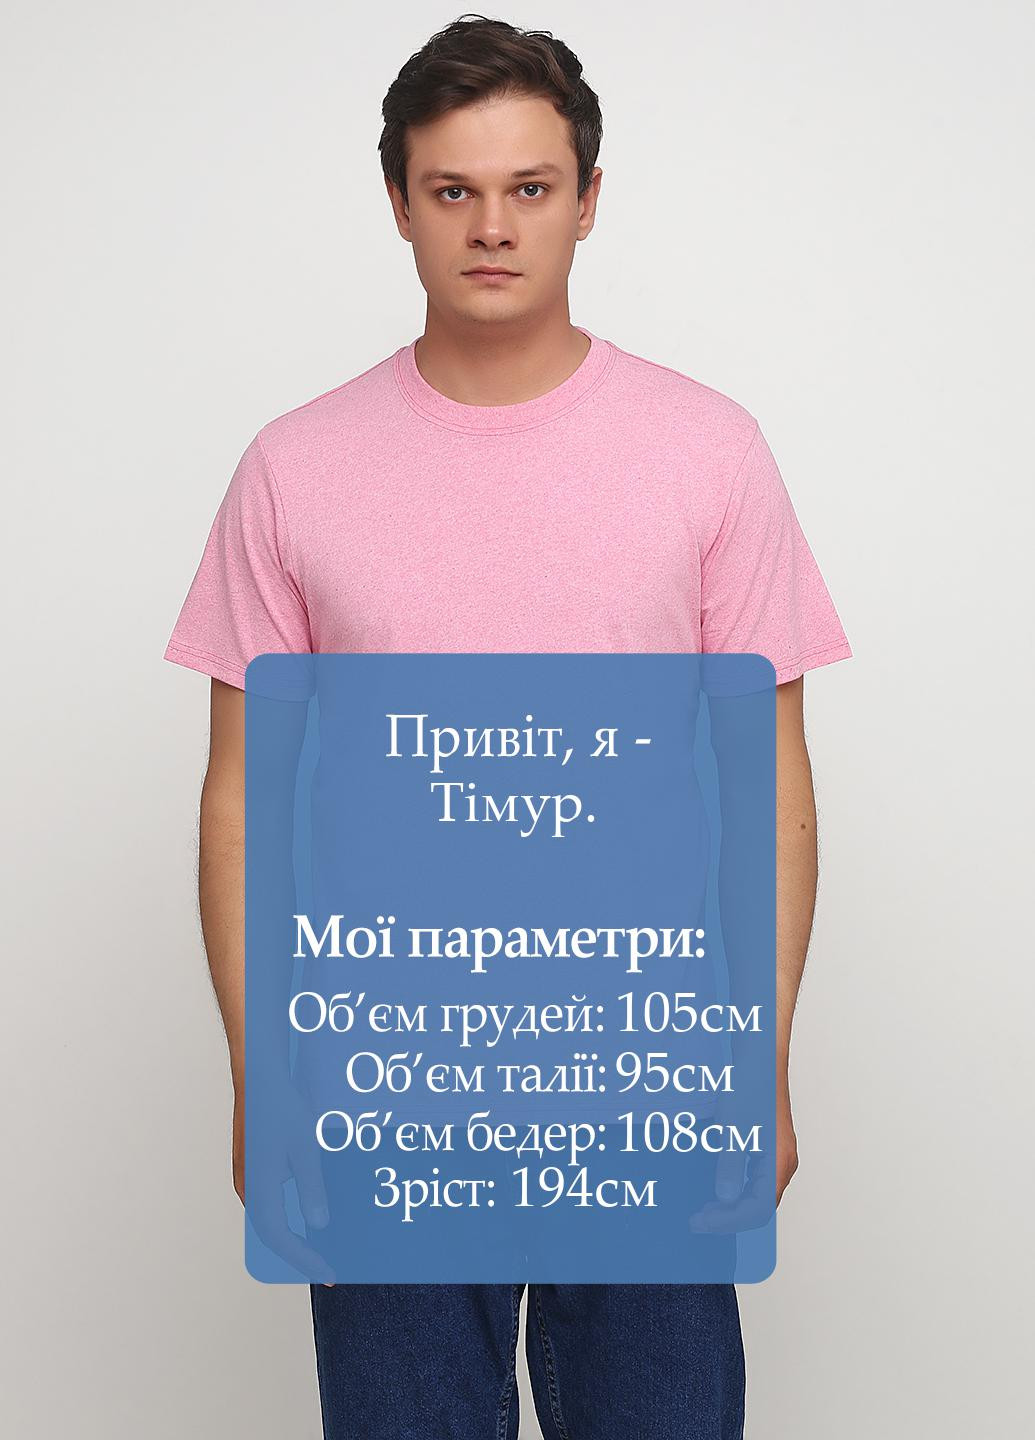 Розовая летняя футболка Repair the world